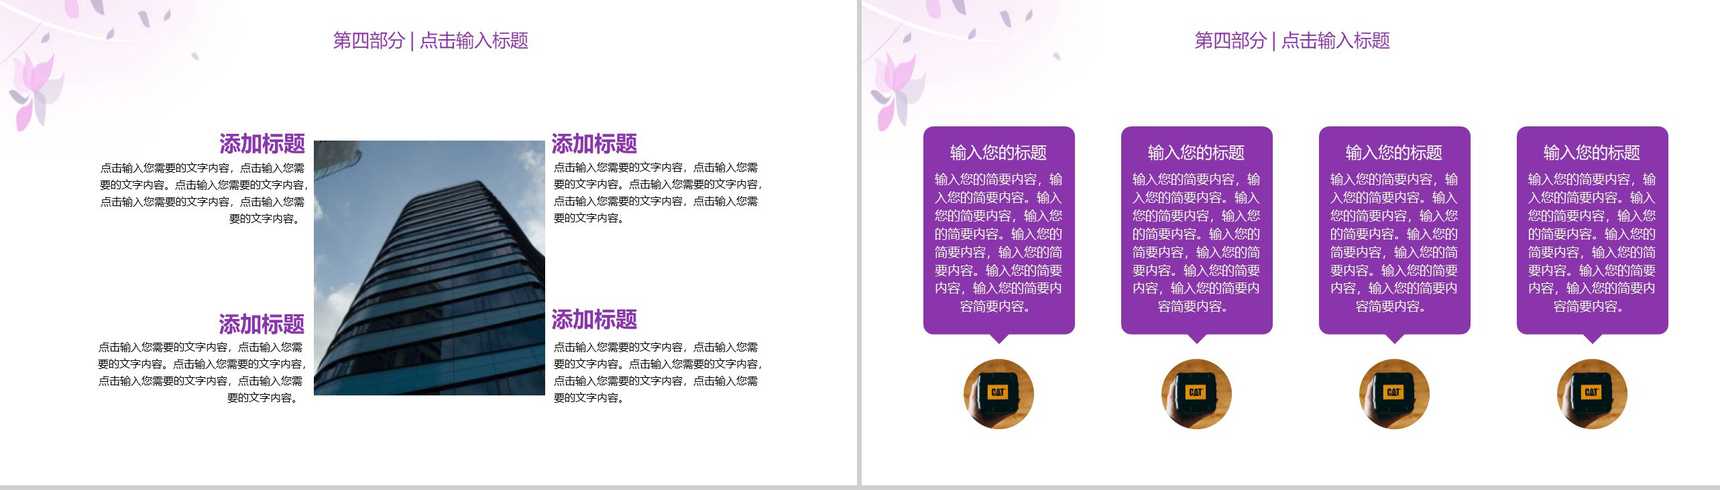 浅紫色简约唯美商务风企业宣传PPT模板-9